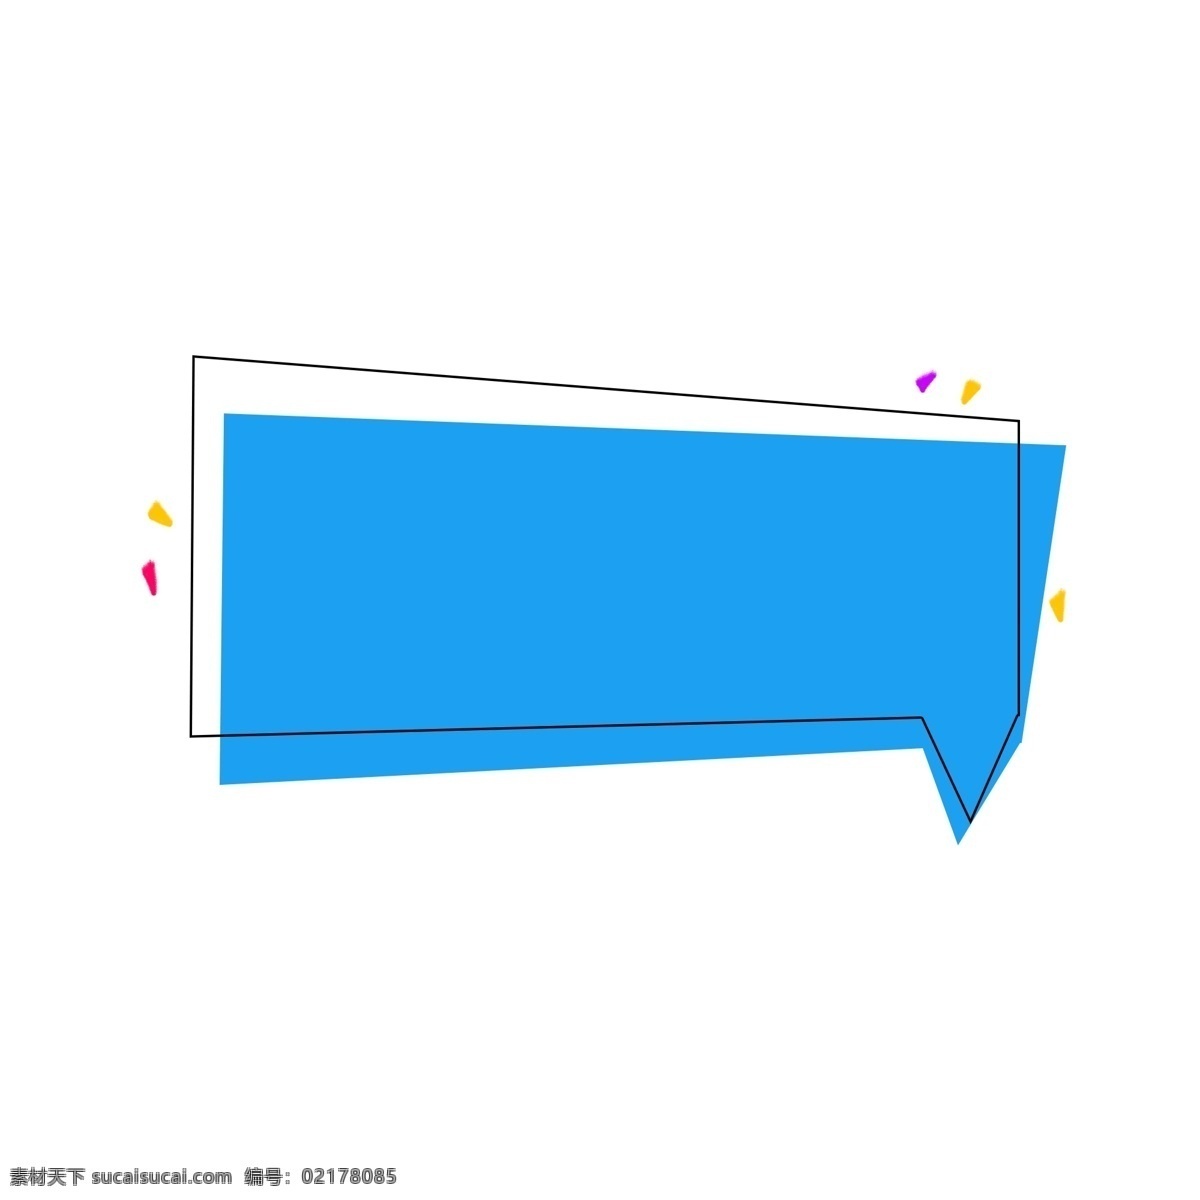 蓝色 创意 几何 形状 漂浮物 不规则 线框 边框 对话框 三角形 彩色 信息框 对话 框 扁平化